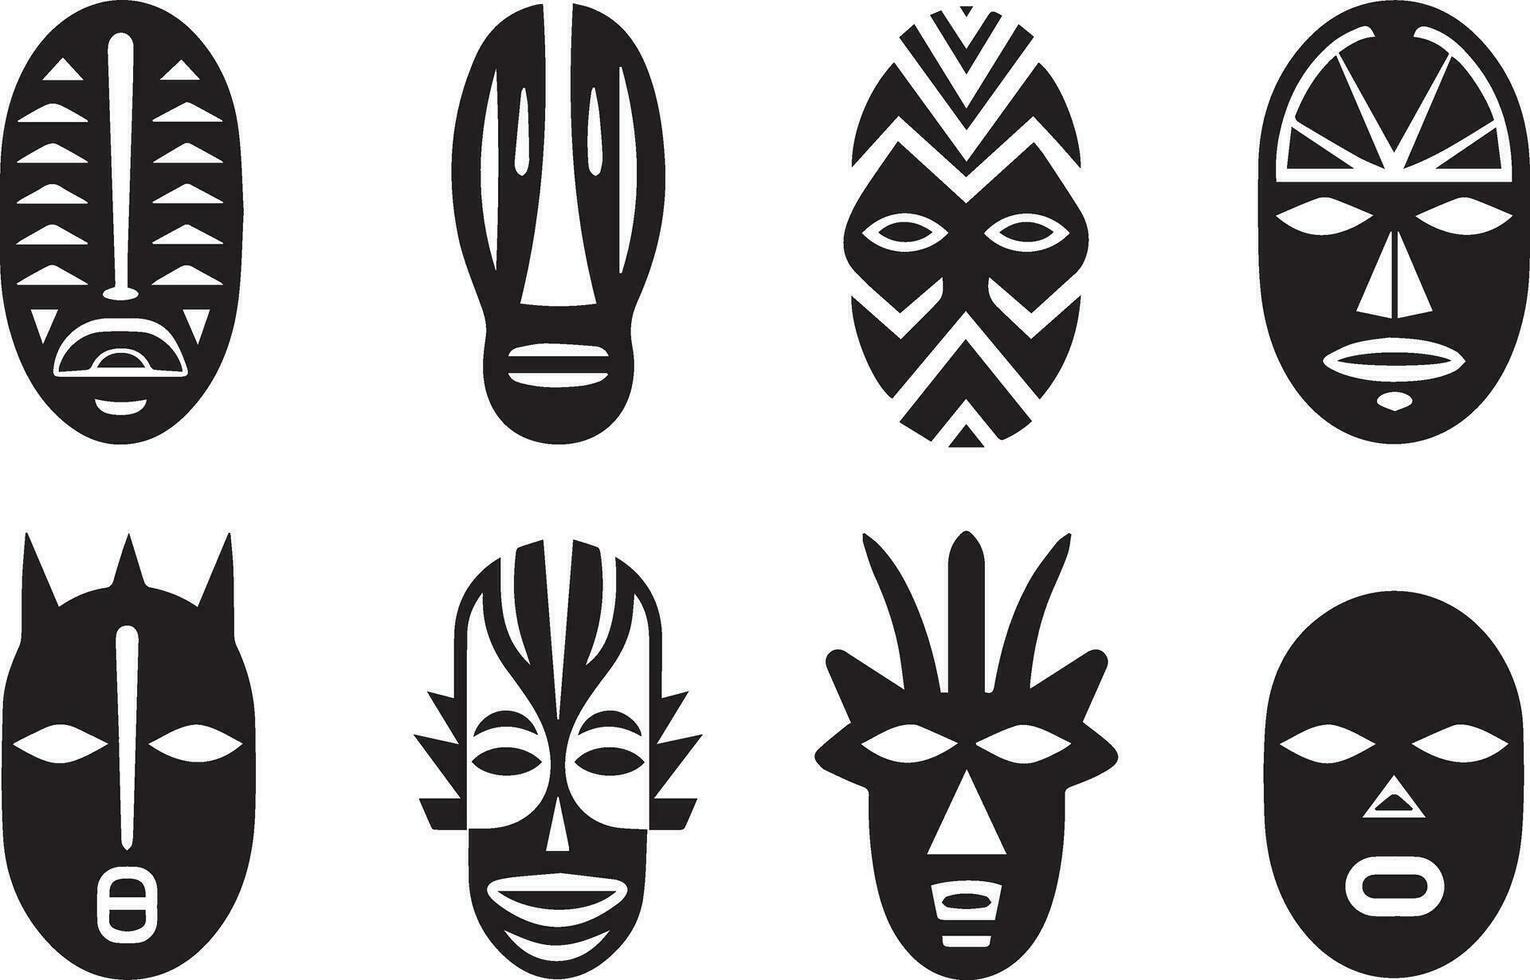 impostato di africano tribale maschere, tribale maschere vettore illustrazione